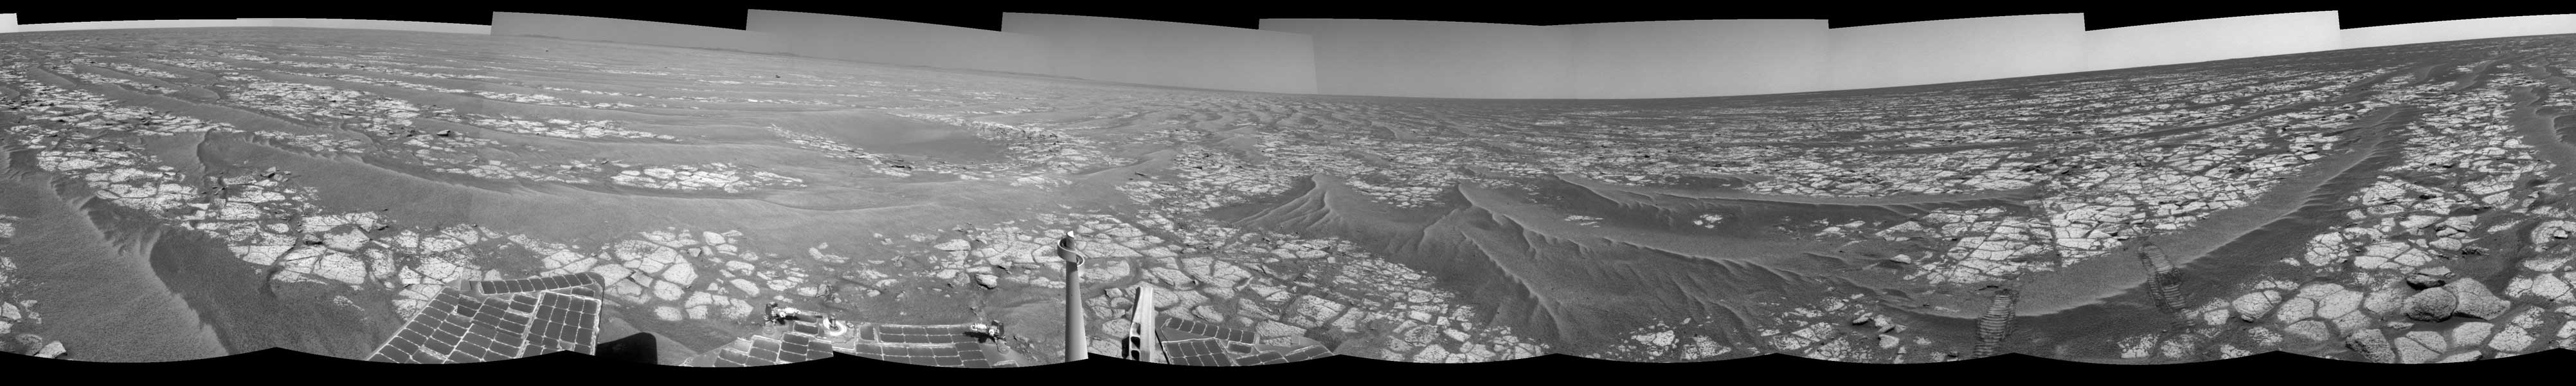 Das Panorama zeigt die Marsoberfläche mit hellem Gestein und dunklem Sand. Rechts sind Spuren des Rovers, am unteren Bildrand sind Solarpaneele und Instrumente des Rovers Opportunity.